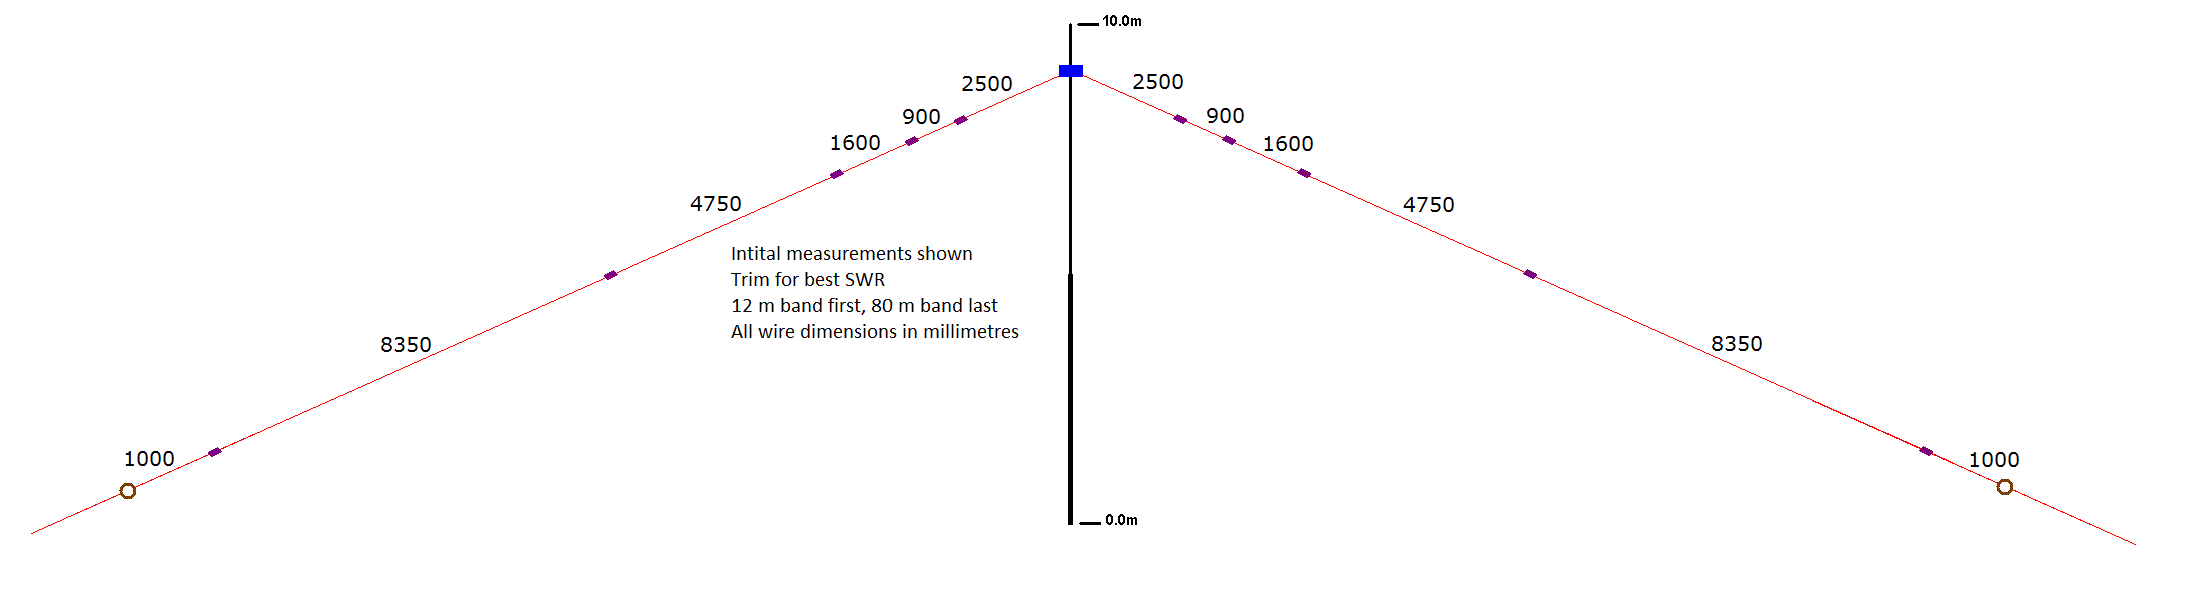 diagram_2 revised